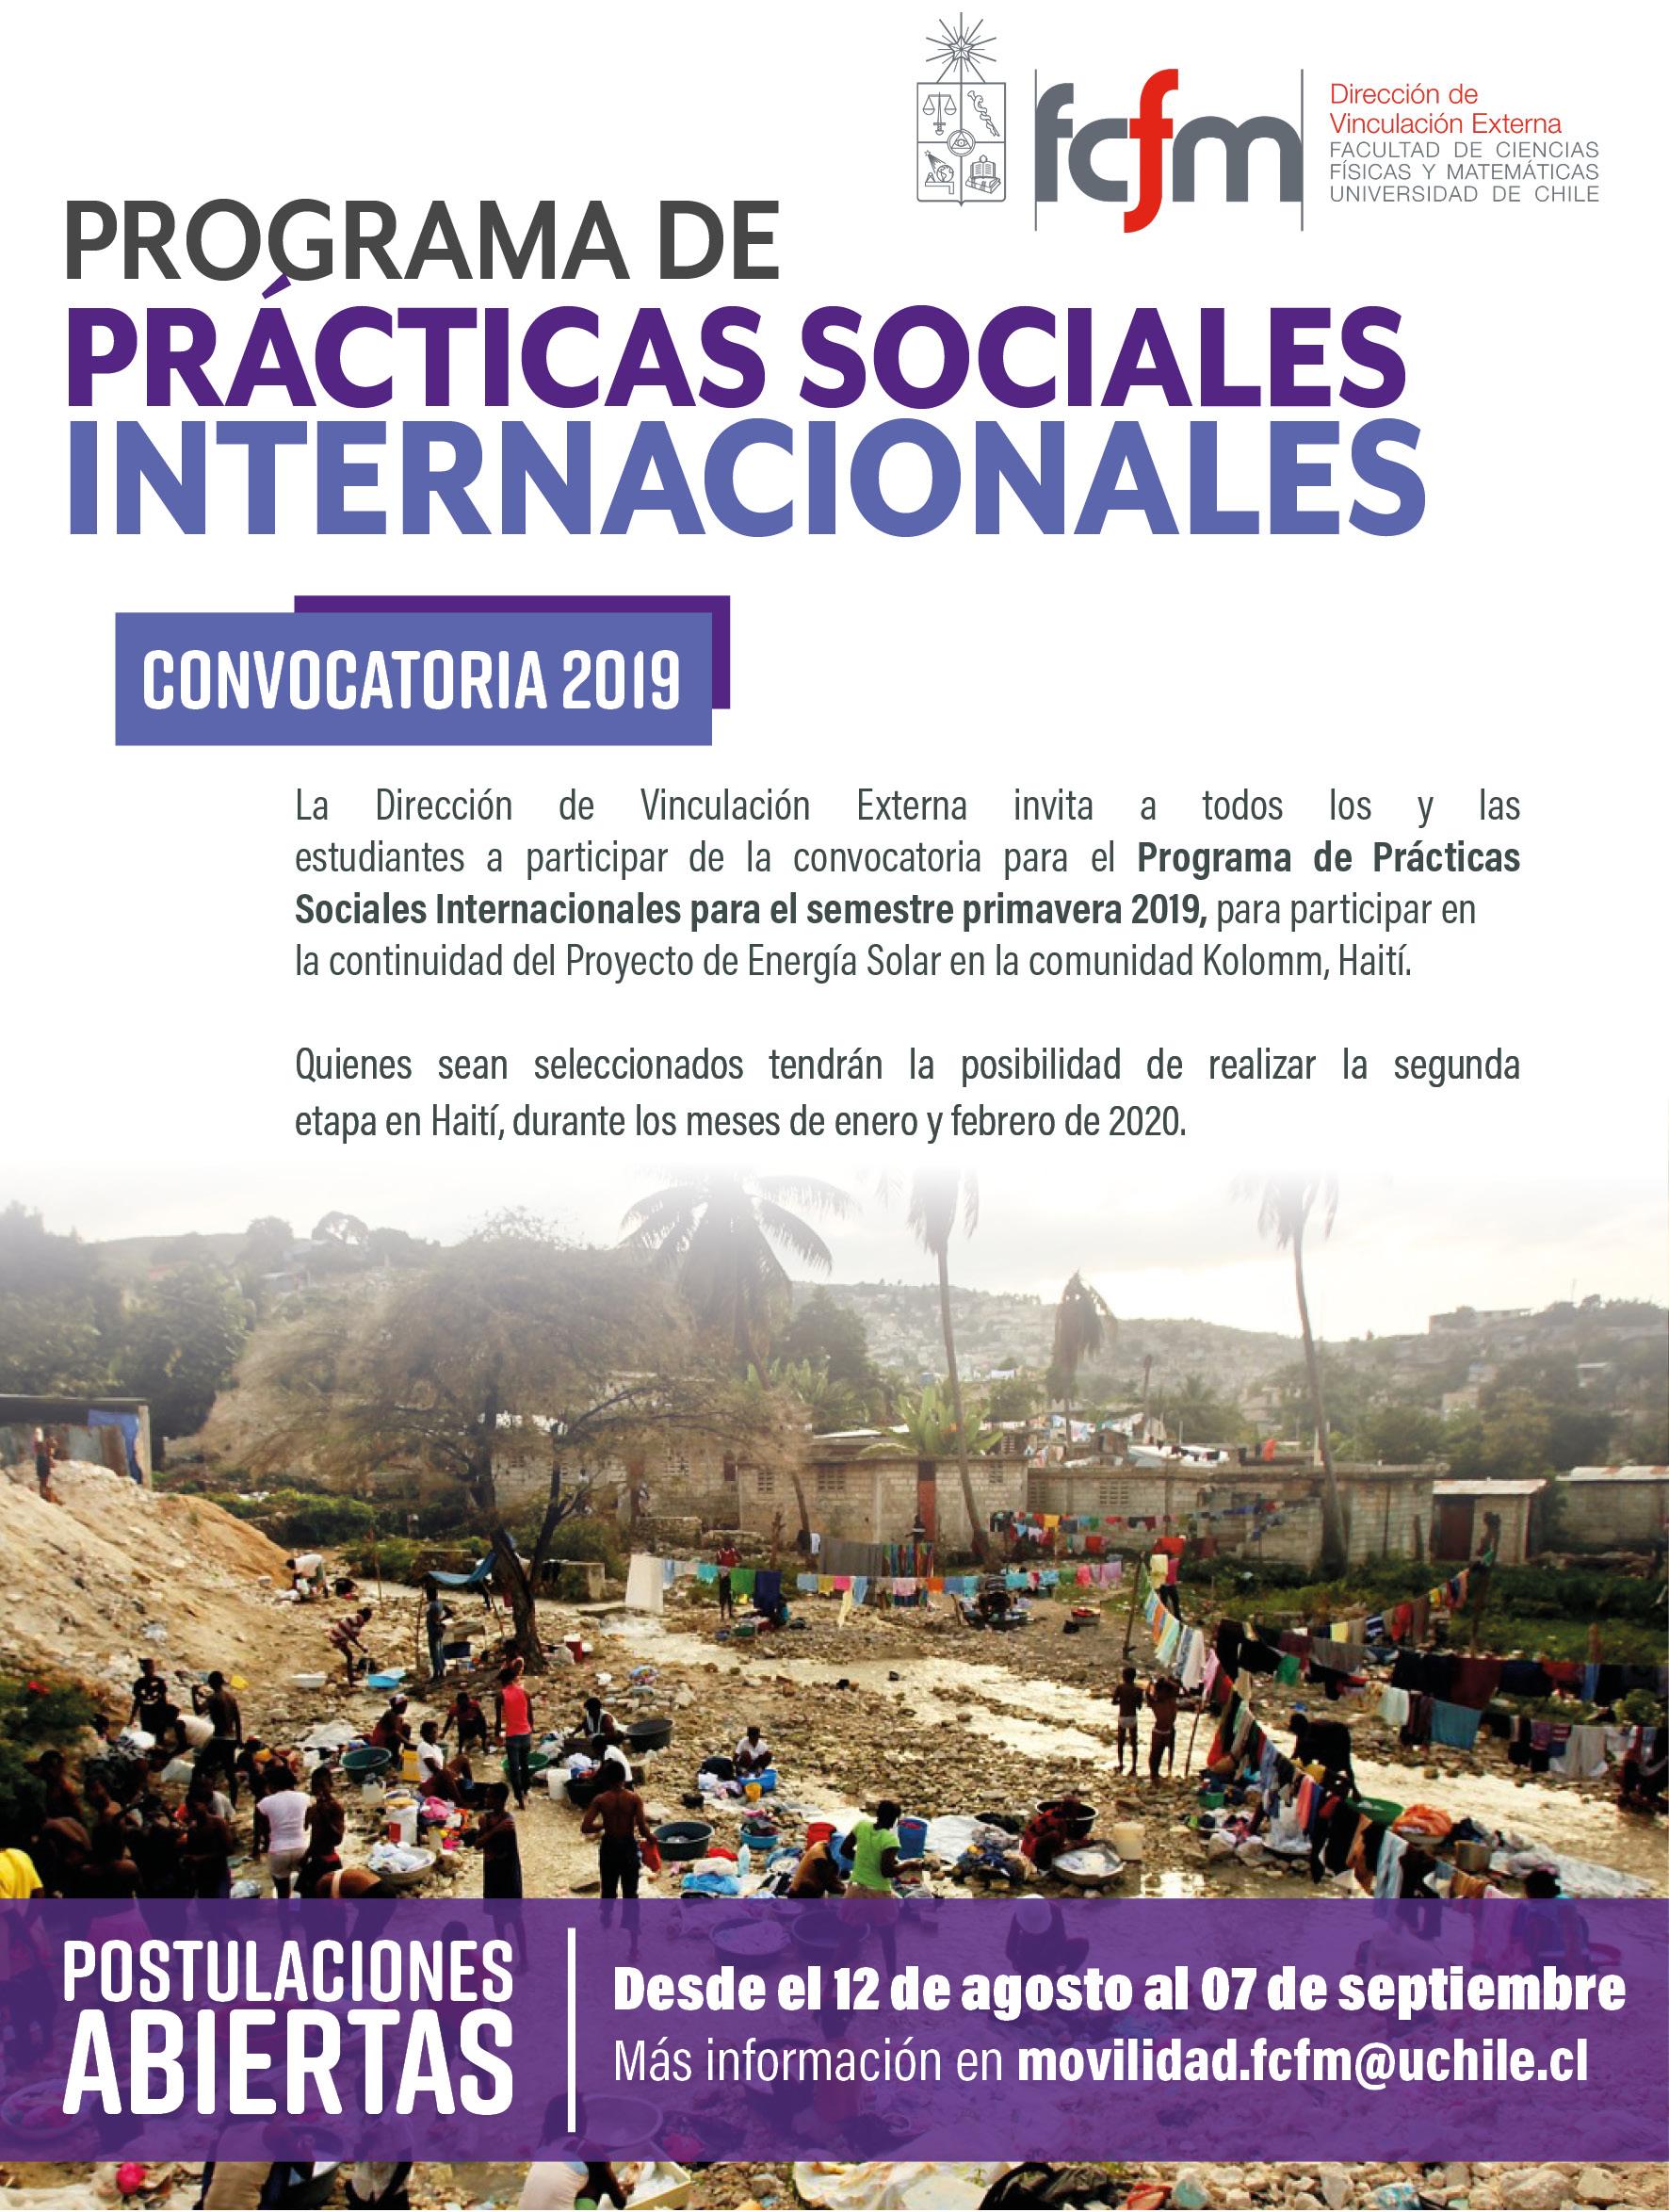 Afiche prácticas sociales internacionales 2019